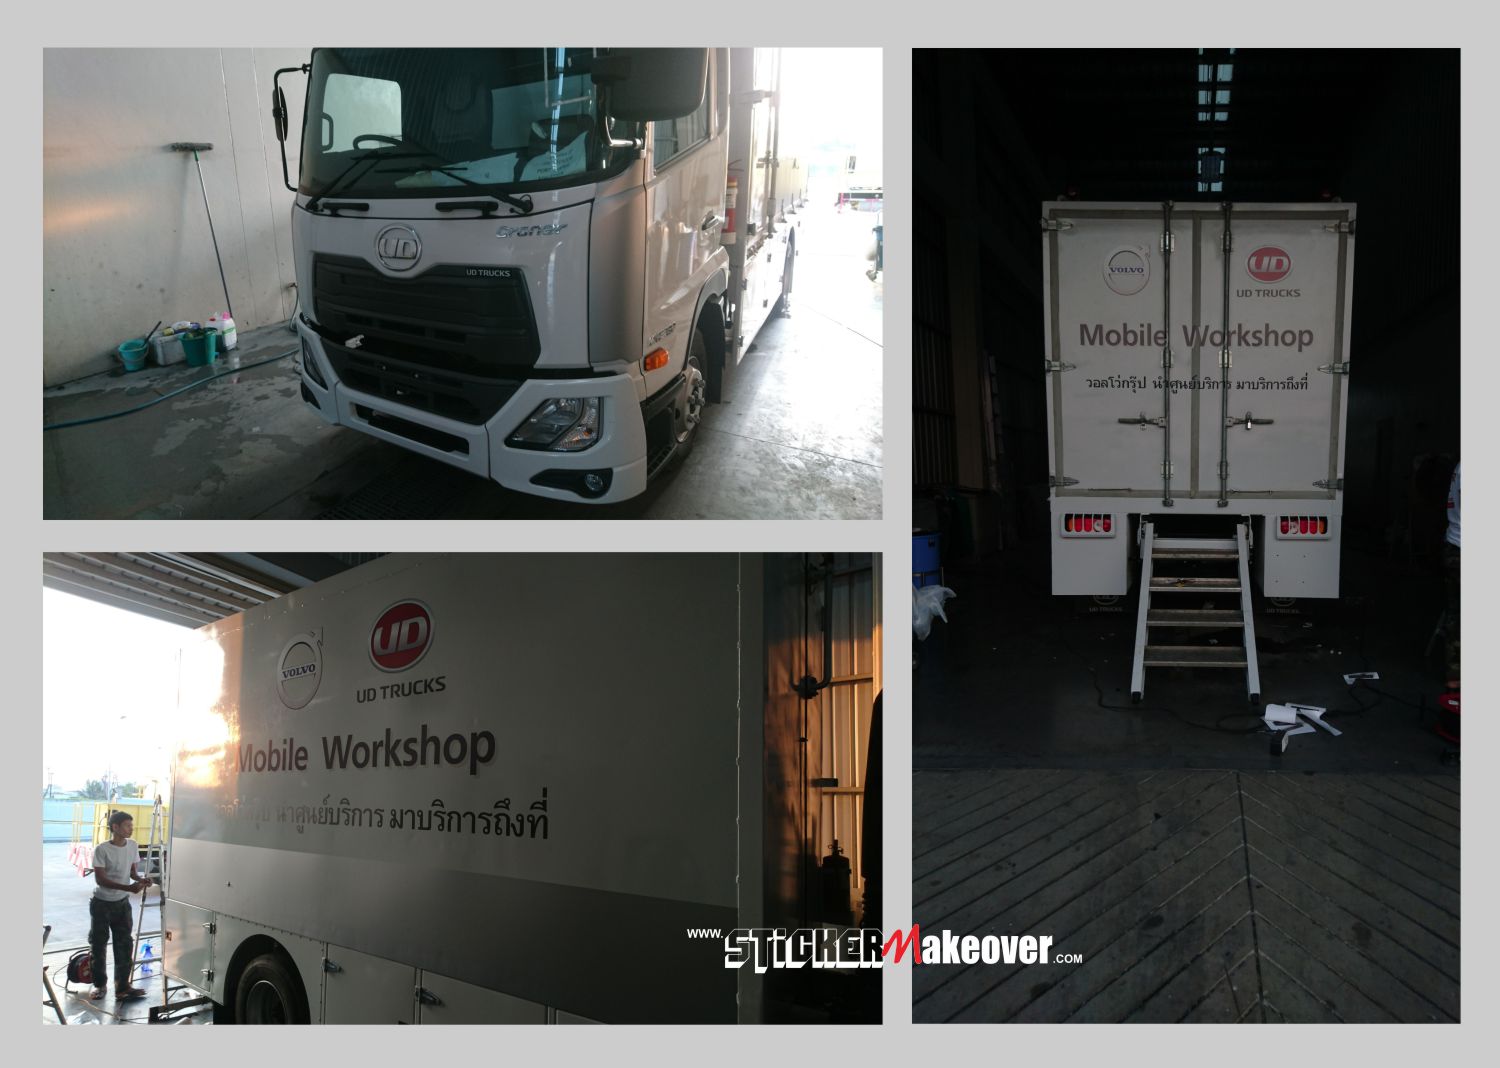 สติ๊กเกอร์ติดรถ สติกเกอร์รถฟู้ดทรัค food truck สติกเกอร์รถตู้คอนเทนเนอร์ สติกเกอร์รถ6ล้อ สติกเกอร์ติดรถทัวร์  สติกเกอร์ติดรถตู้บริษัท รถโฆษณา รถบริษัท ตู้ CargoBox ออกเเบบสติกเกอร์รถบริษัท สติกเกอร์โฆษณาติดรถบริษัท ติดสติกเกอร์รถส่งของ สติกเกอร์ติดตู้ส่งของ ติดสติกเกอร์รถโมบาย สติกเกอร์ติดหลังคาแครี่บอย ติดสติกเกอร์รถบริษัทนอกสถานที่ 